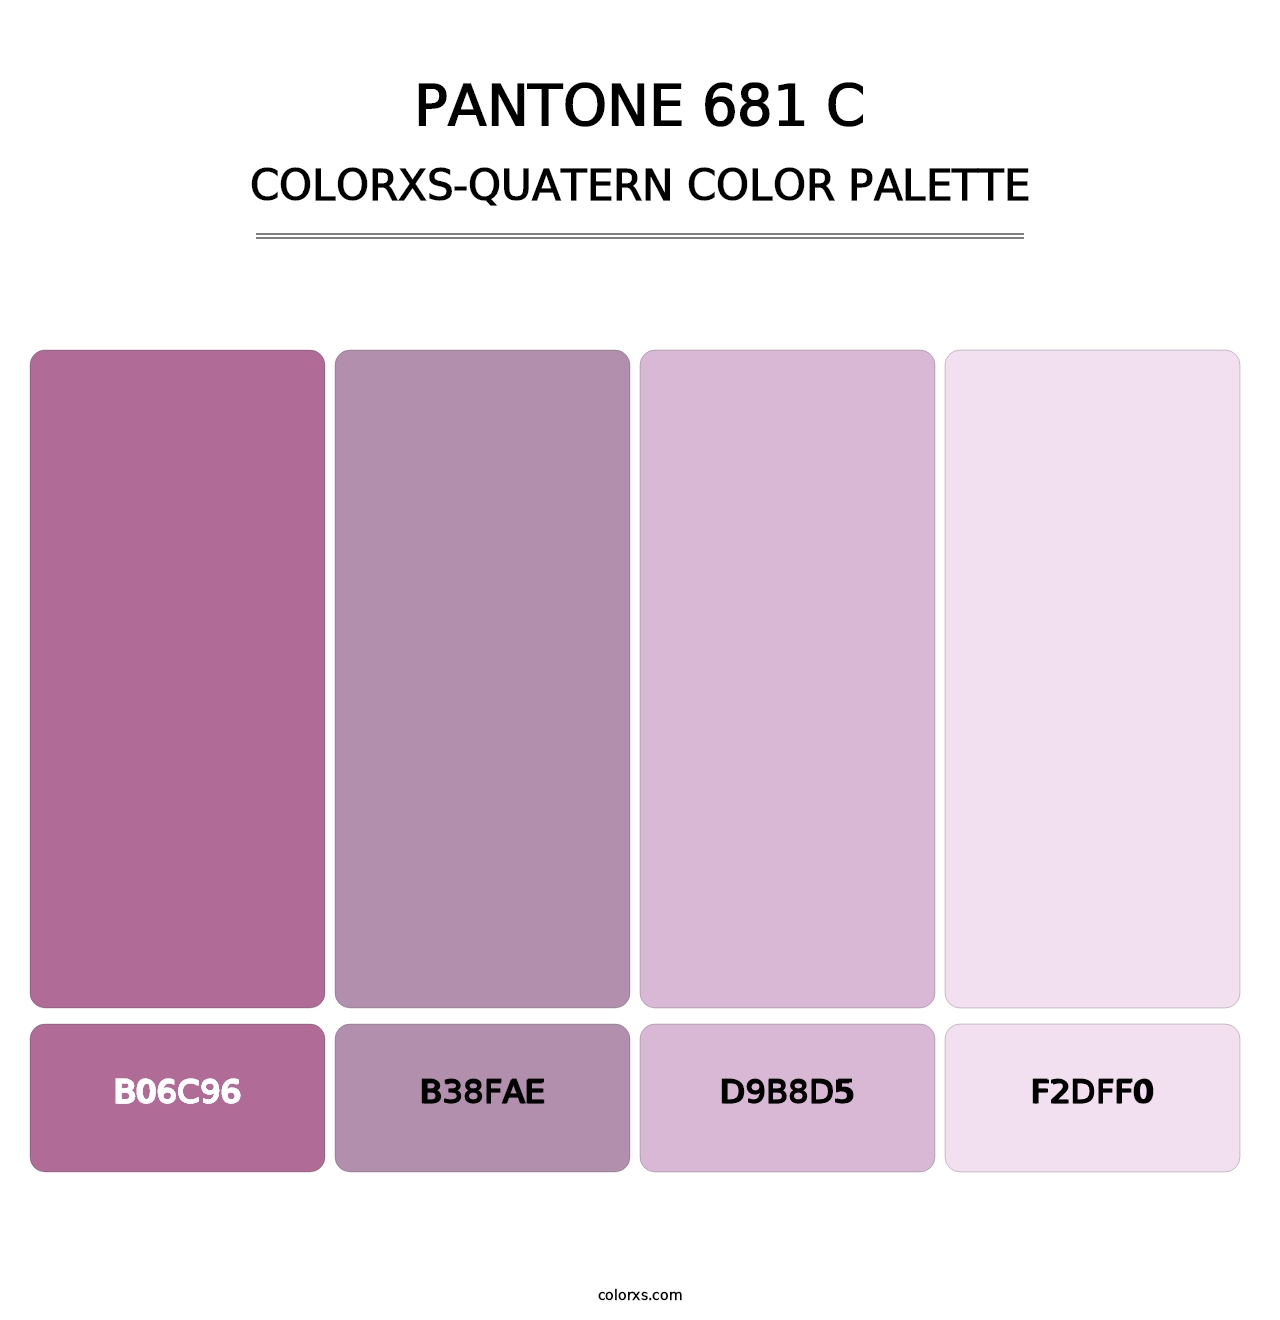 PANTONE 681 C - Colorxs Quatern Palette